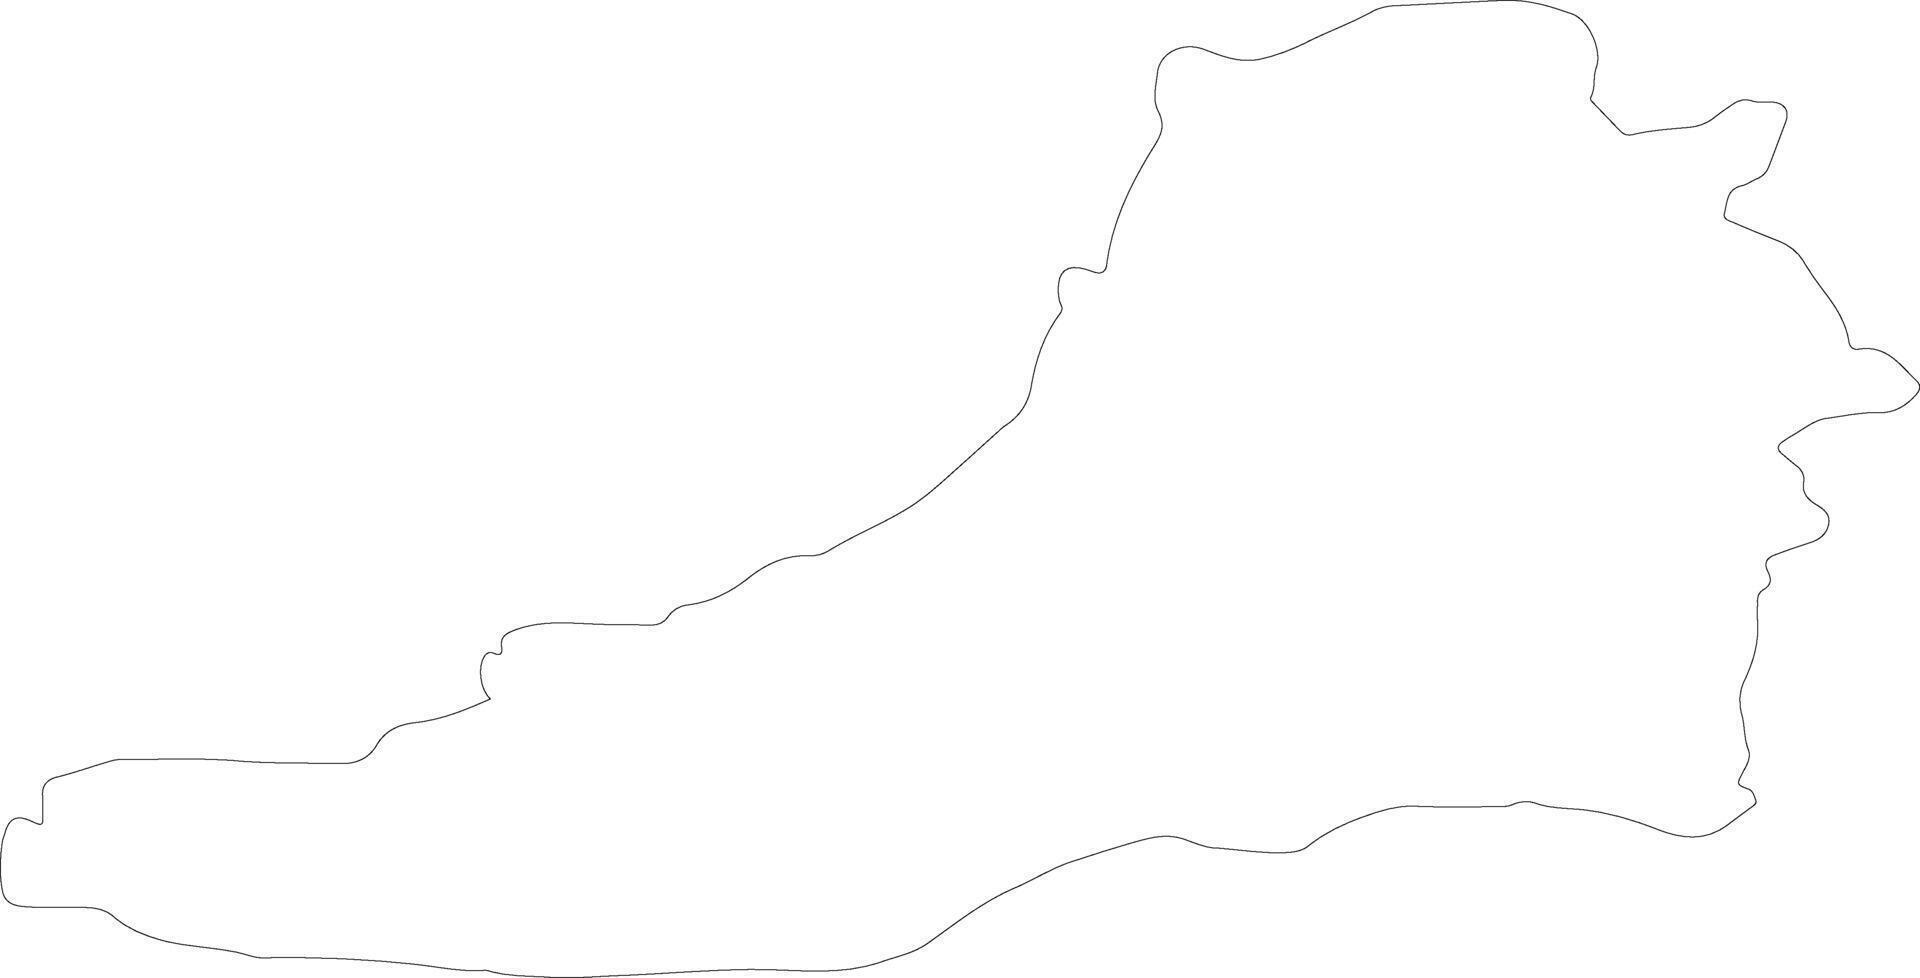 Ceredigion United Kingdom outline map vector